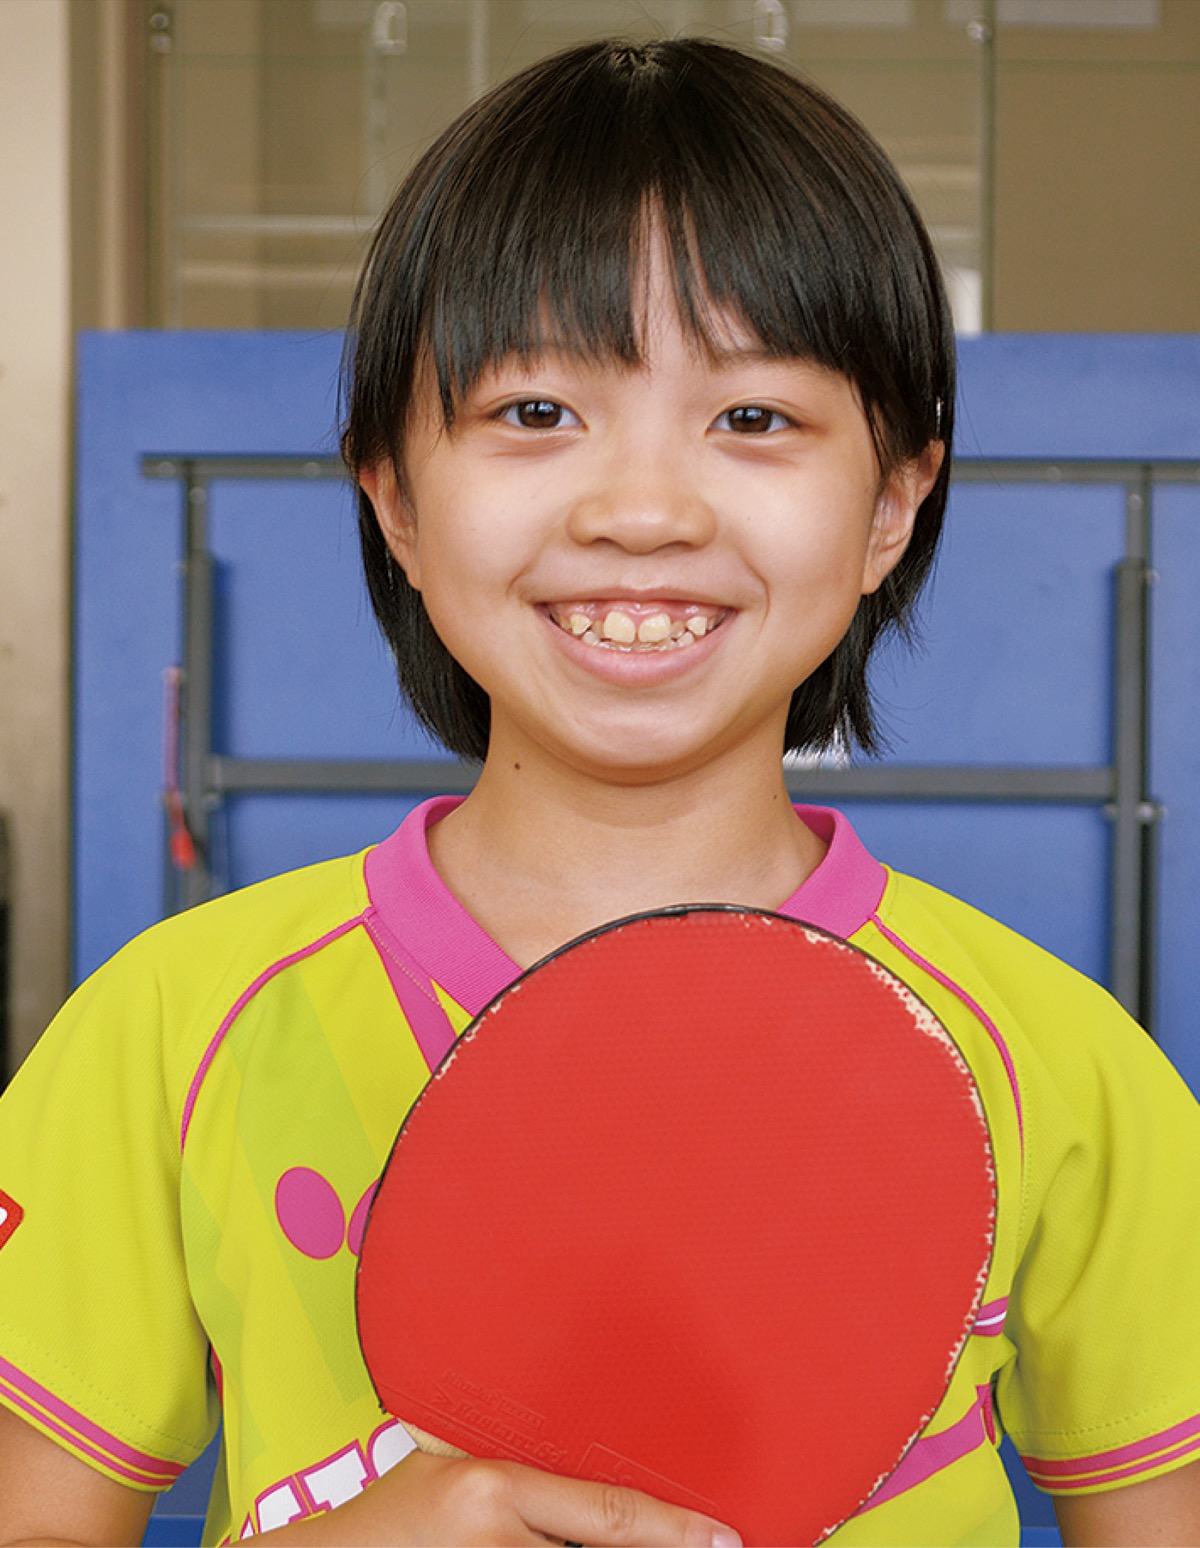 八幡小の安達美音さん 卓球で初の全国へ 平塚 タウンニュース